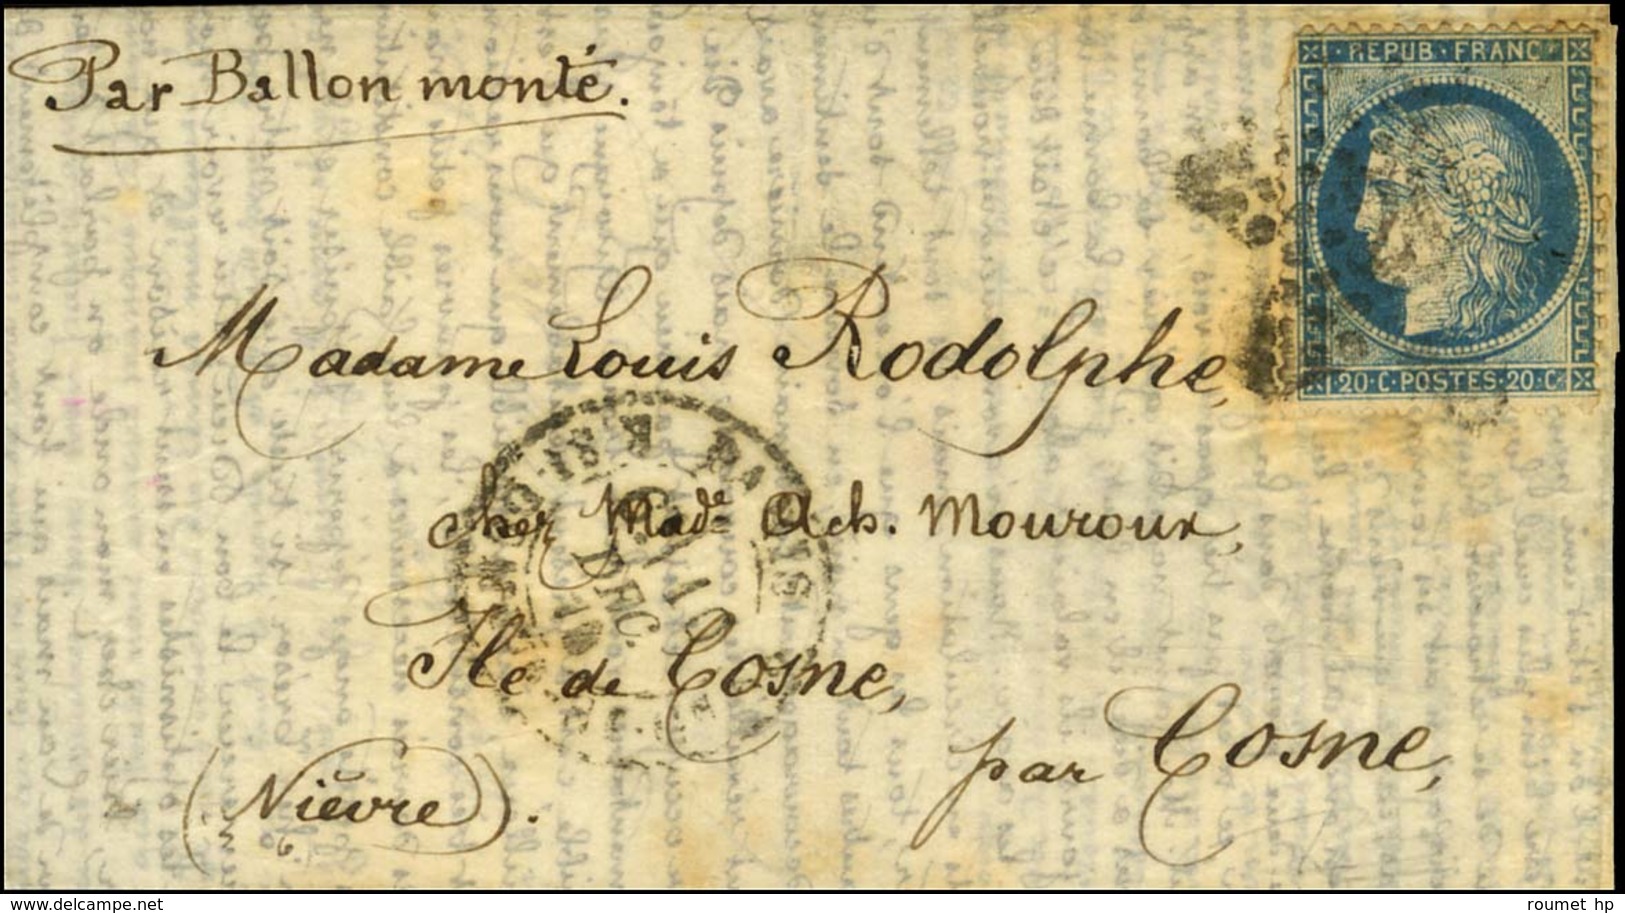 Etoile 20 / N° 37 Càd PARIS / R. ST DOMque ST GN 10 DEC. 70 Sur Lettre Pour Cosne. Au Verso, Càd D'arrivée 21 DEC. 70. L - Krieg 1870